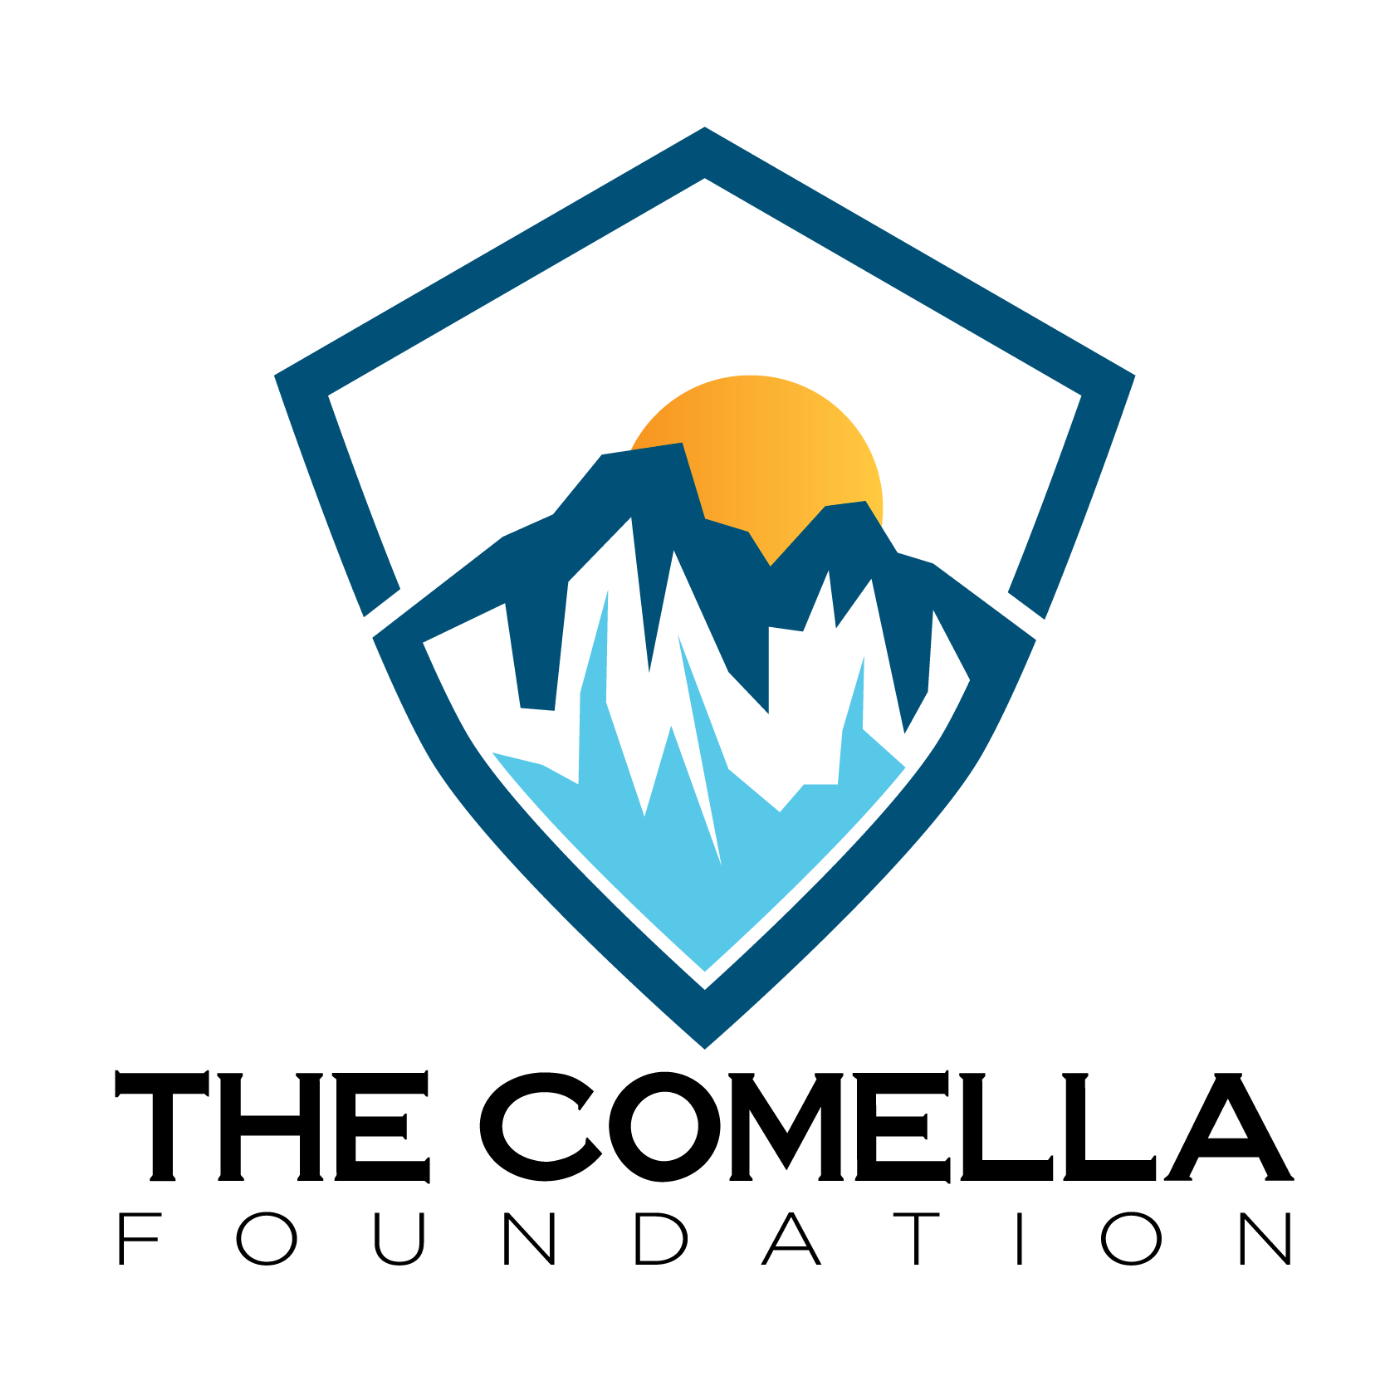 The Comella